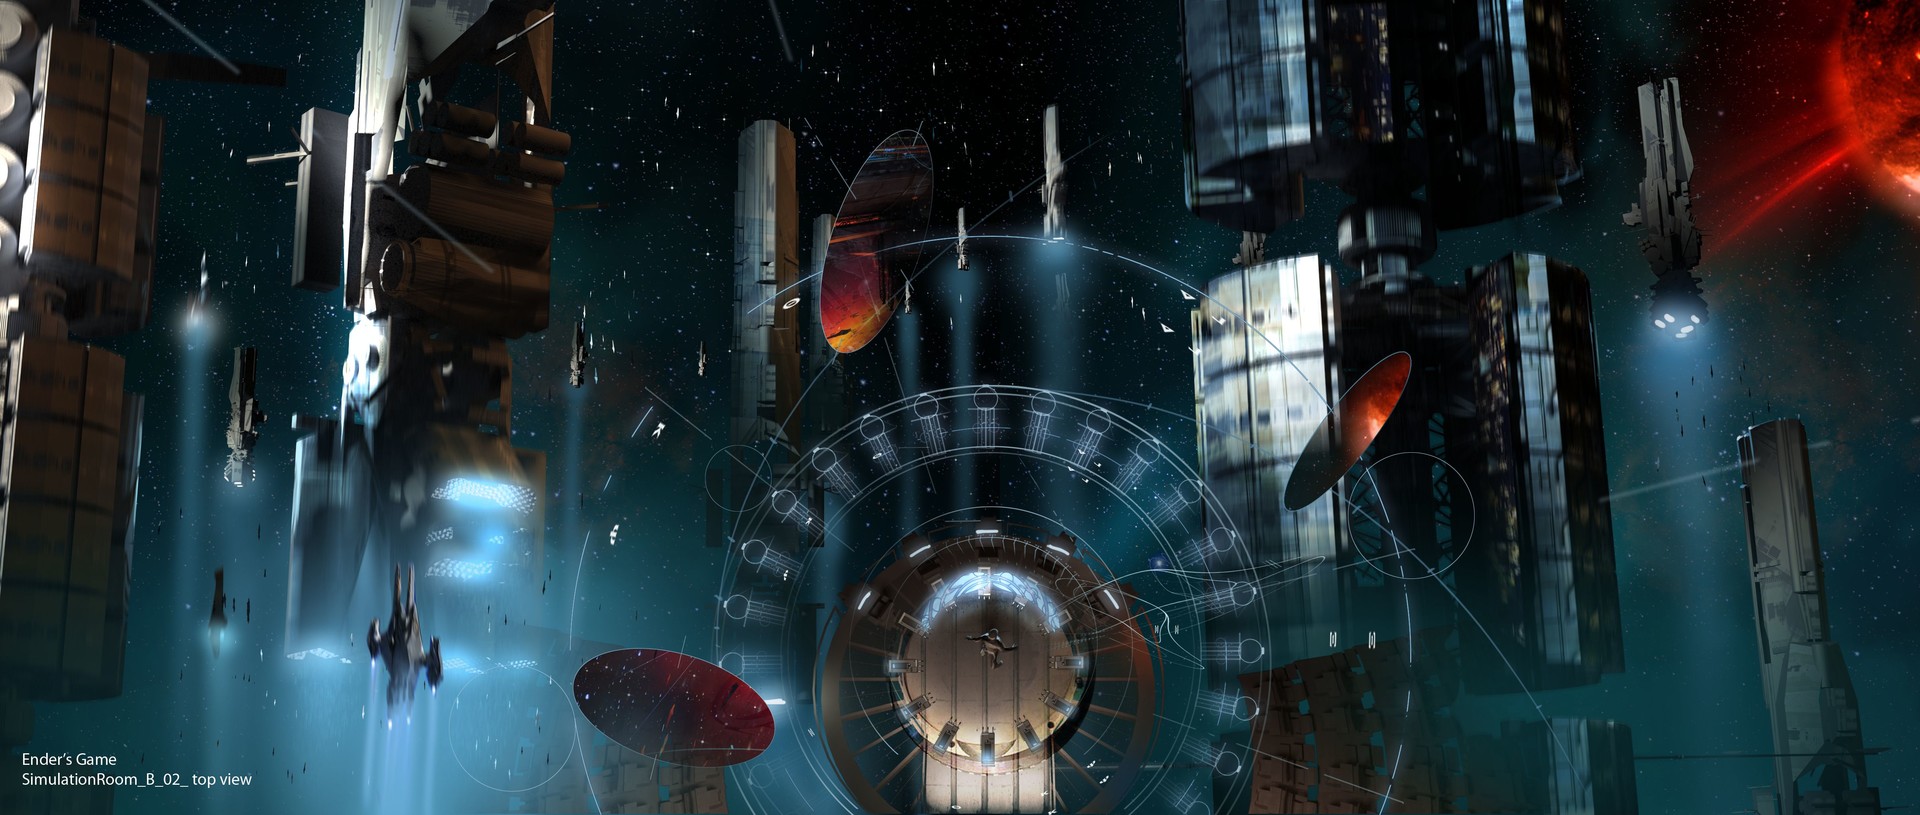 电影 Ender's Game 概念艺术作品-David Levy-25.jpg